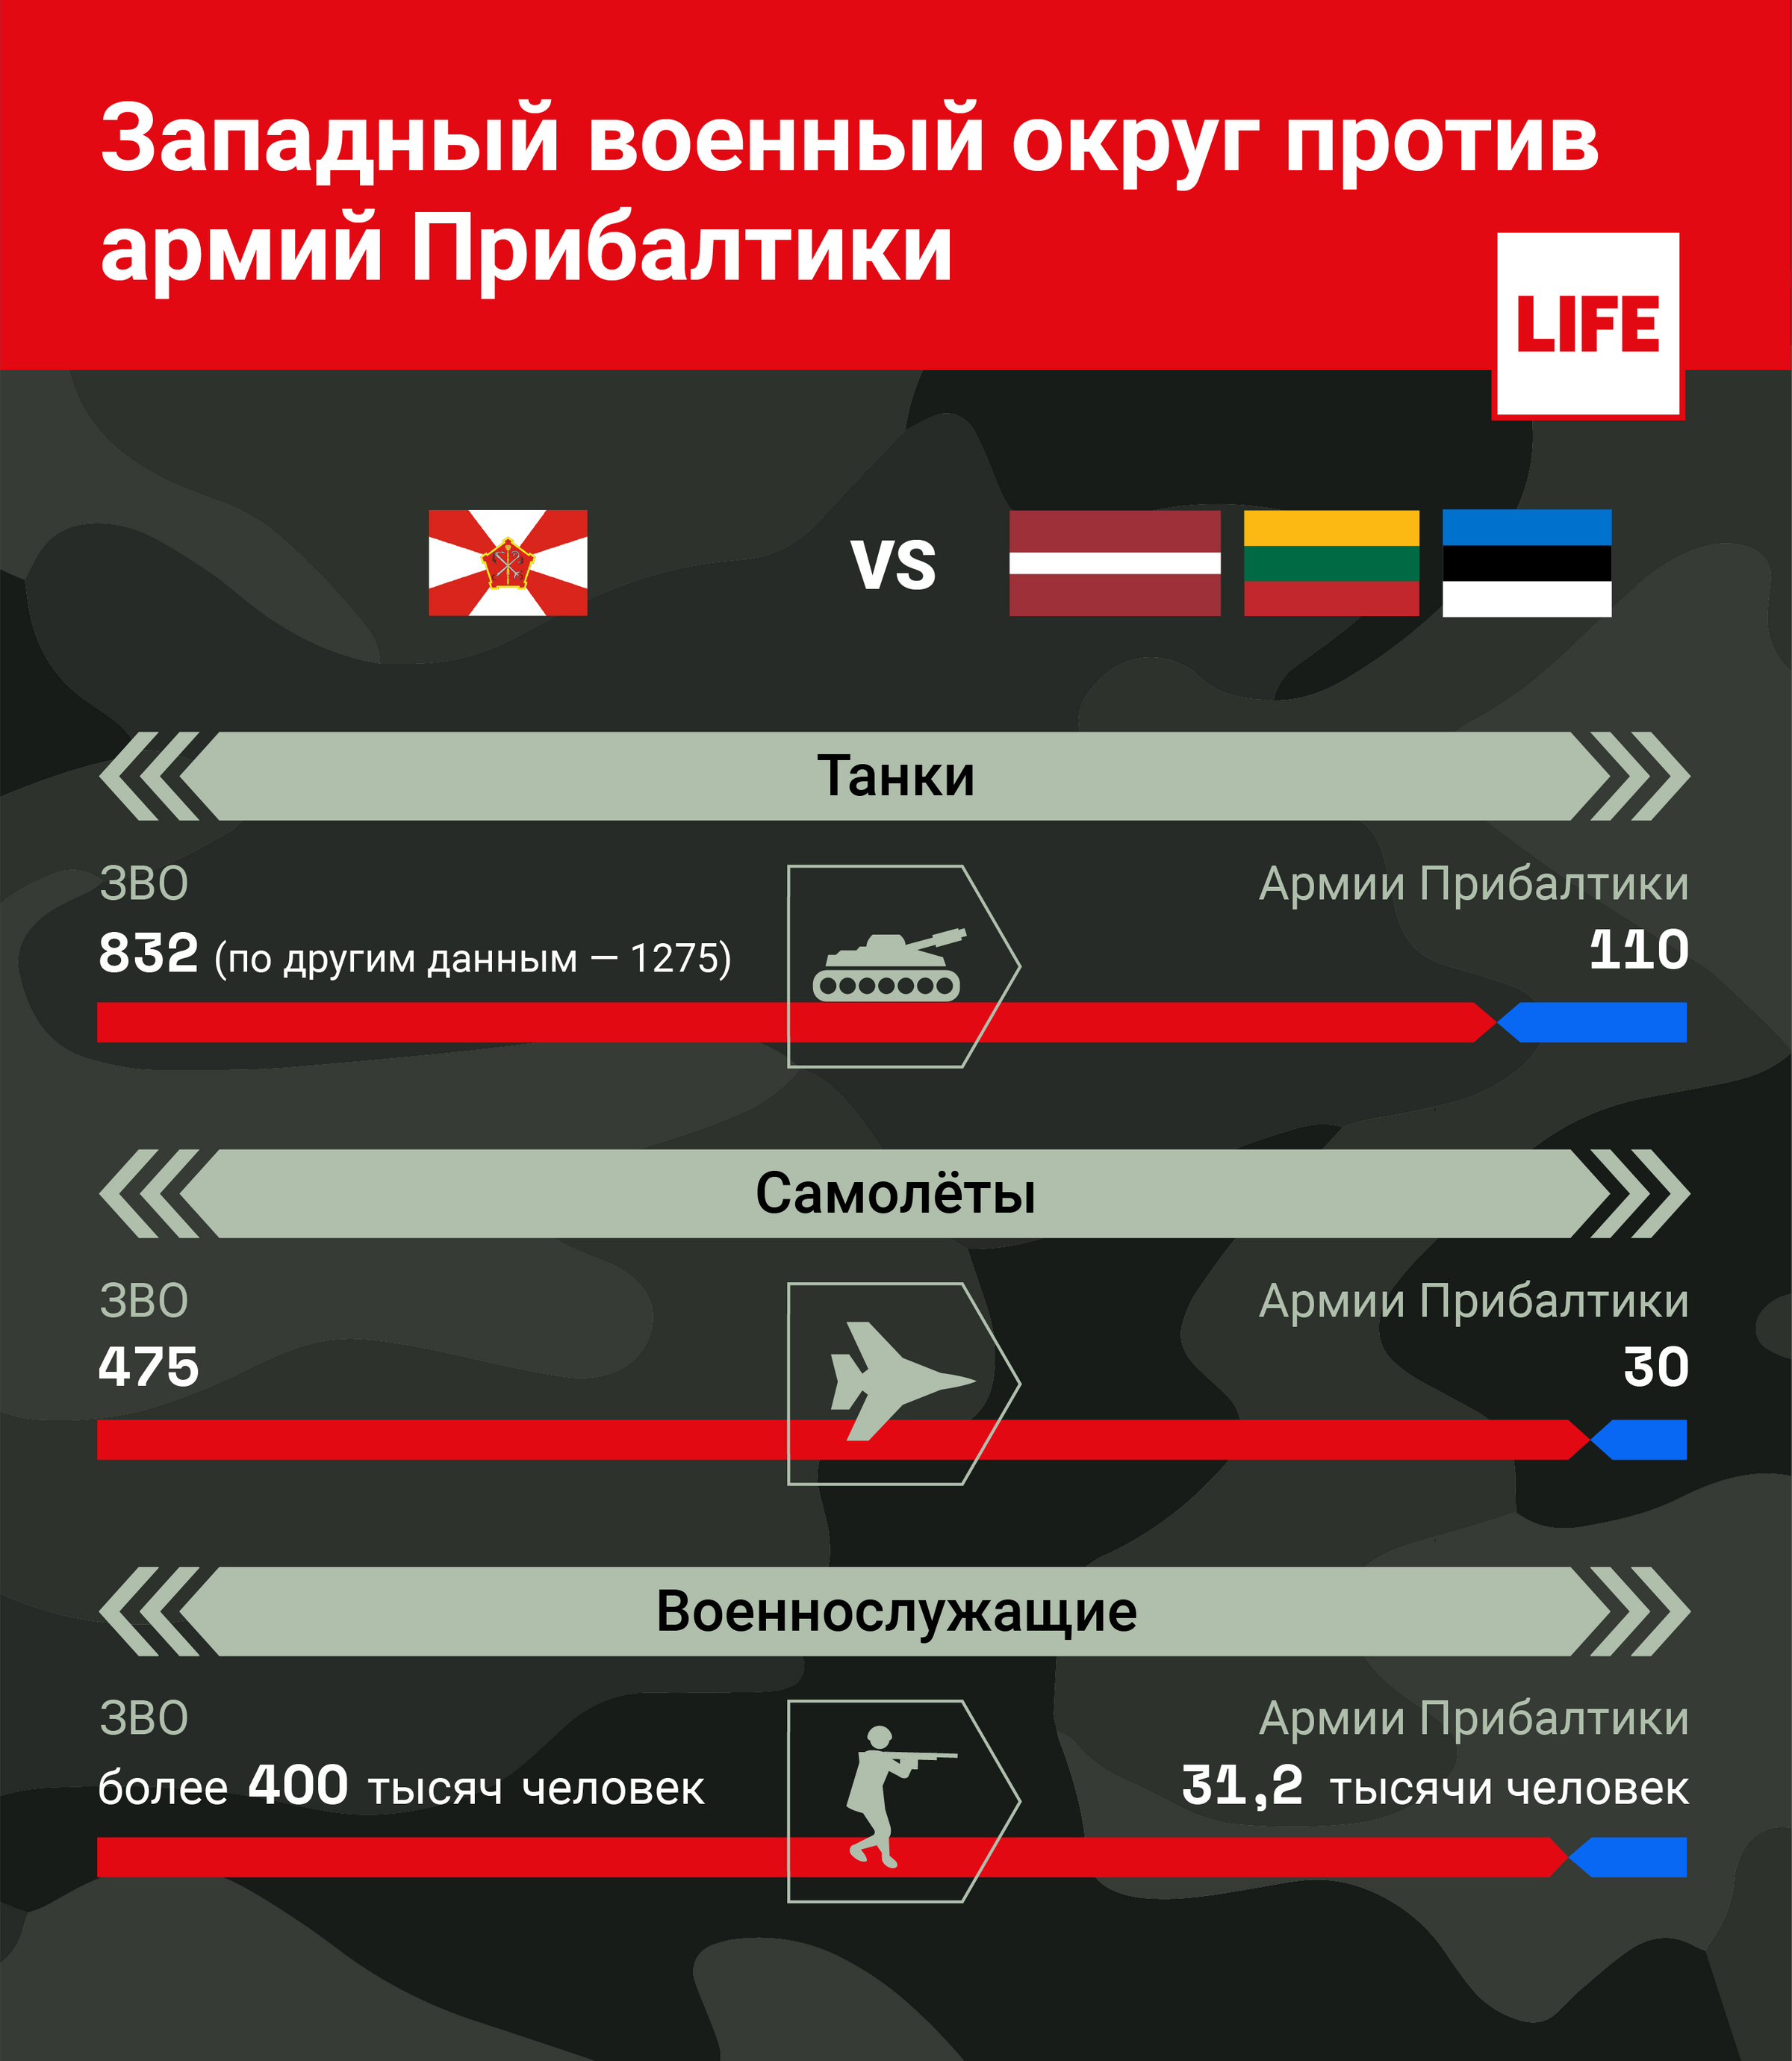 Западный военный округ (ЗВО) vs армии Прибалтики Инфографика © LIFE